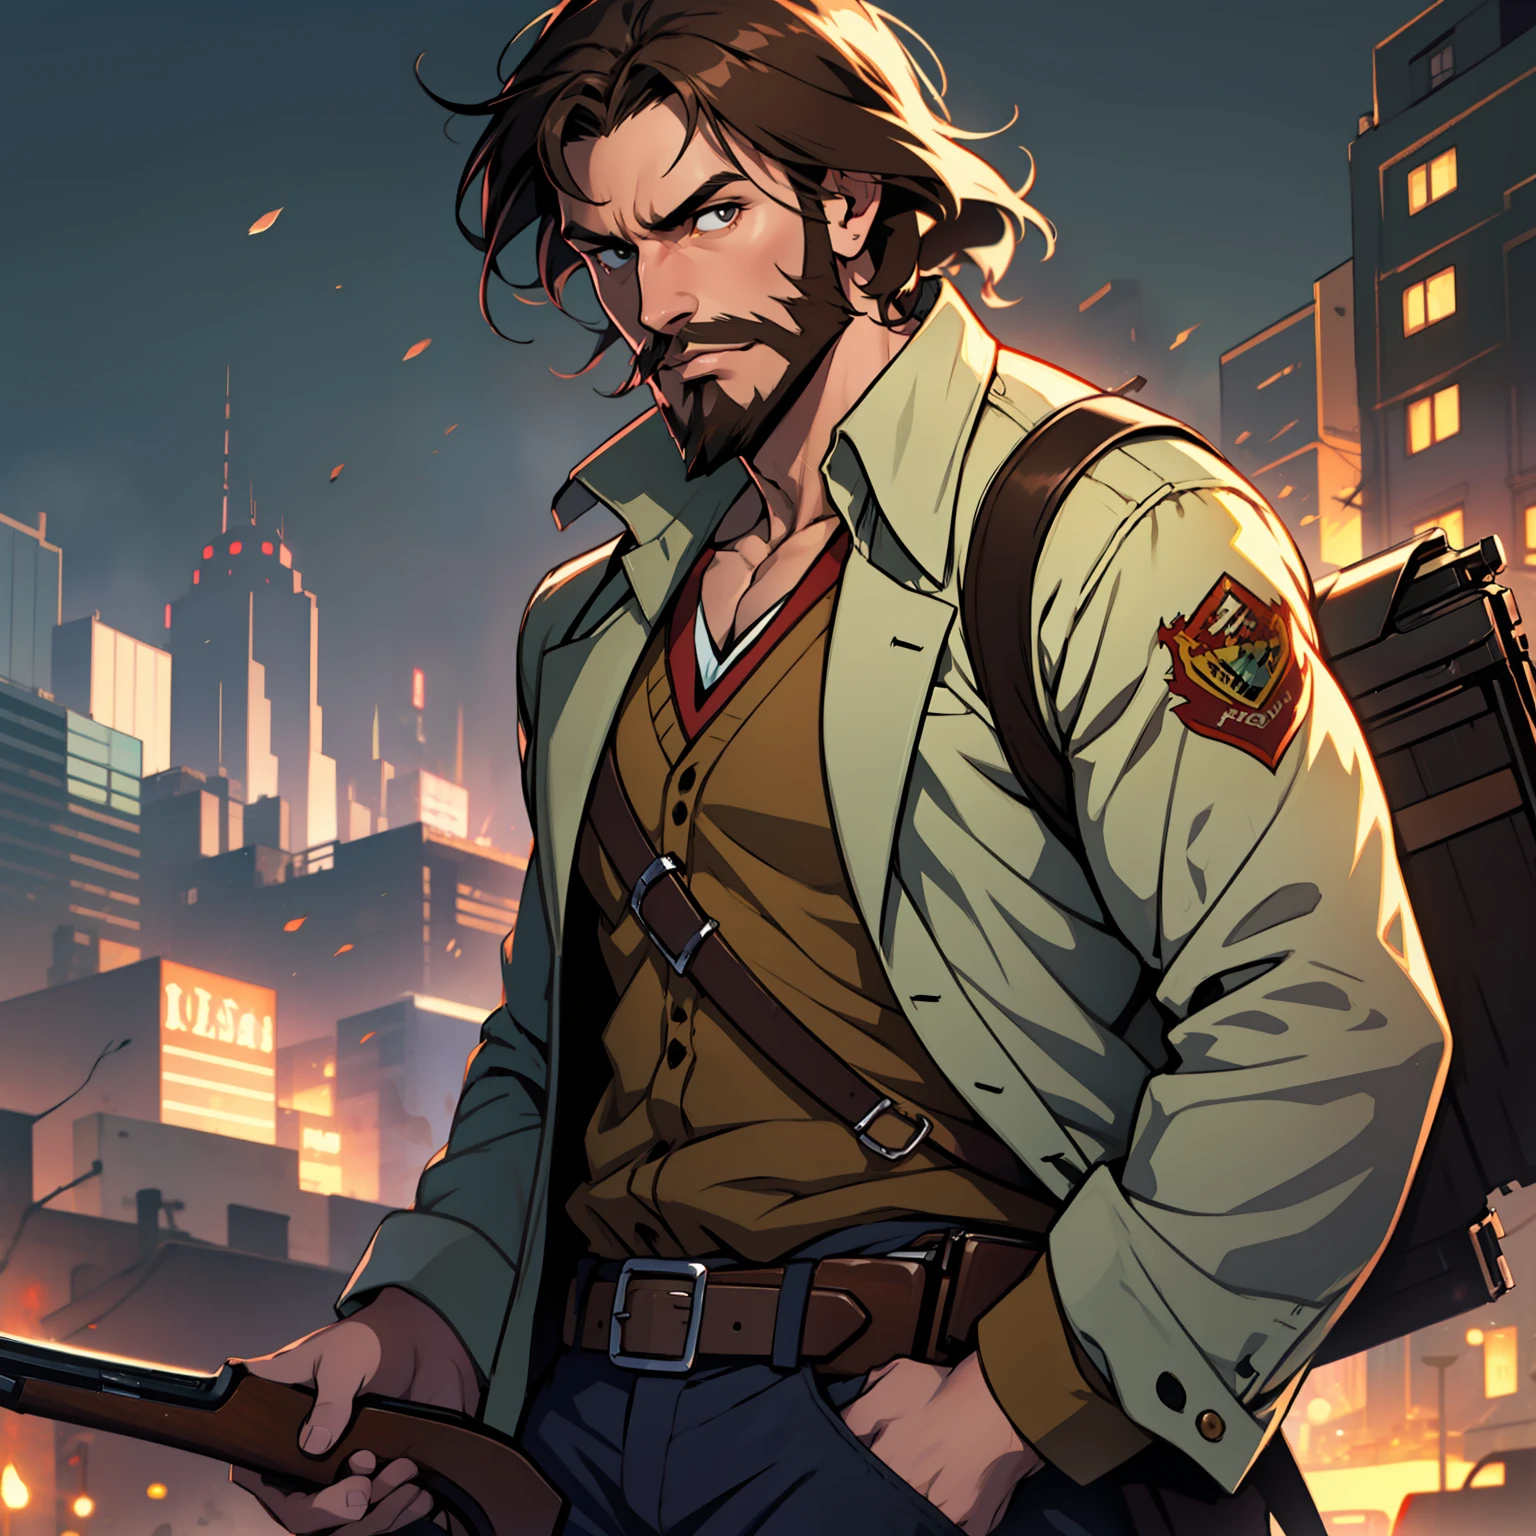 Один, аниме парень с каштановыми волосами и грубоватой коричневой бородой держит винчестерскую винтовку, динамическое освещение